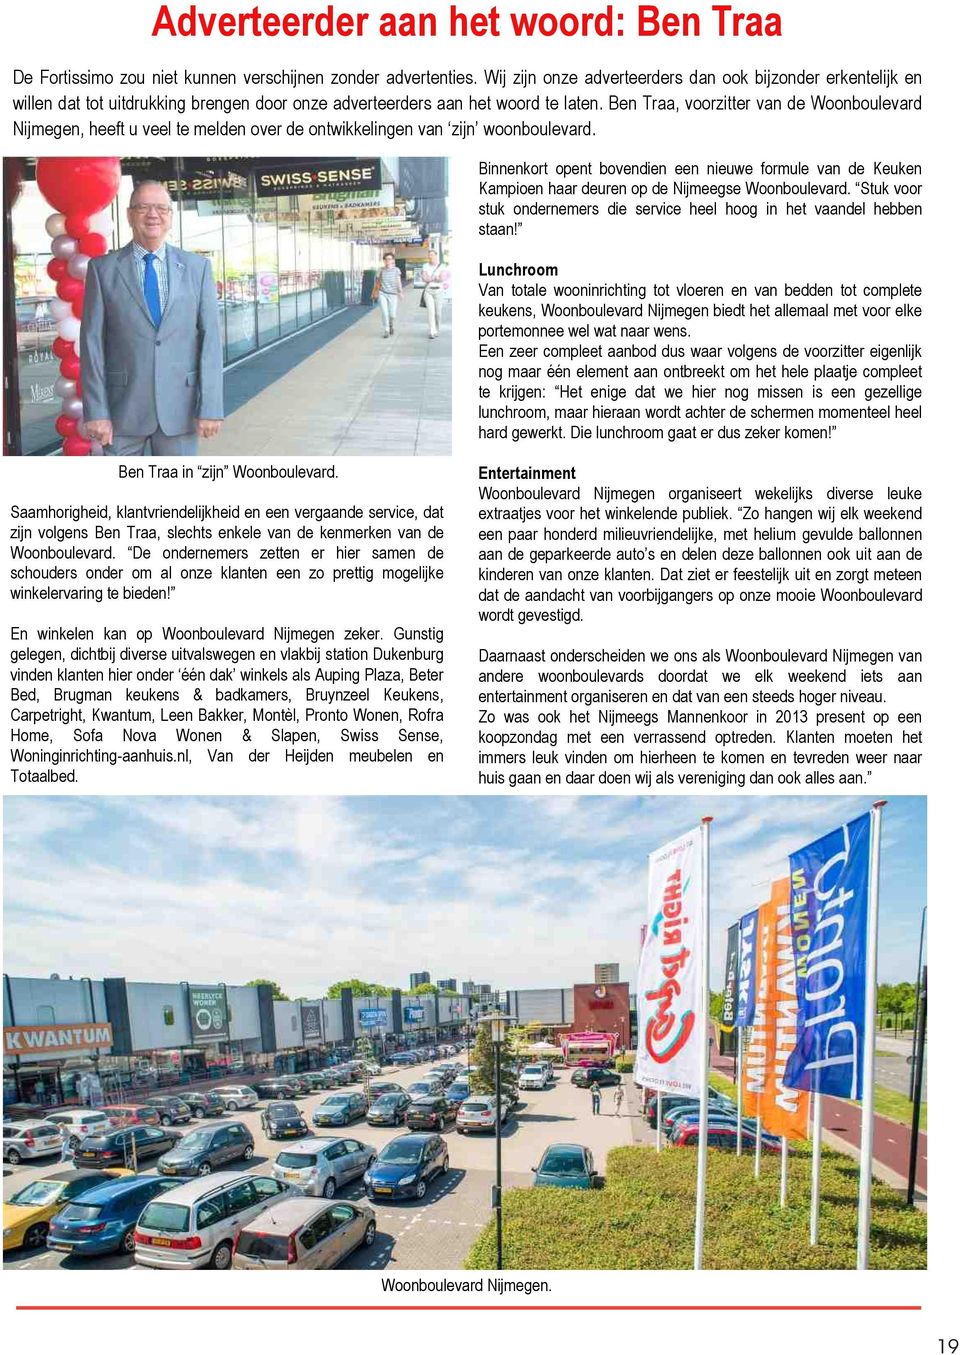 Ben Traa, voorzitter van de Woonboulevard Nijmegen, heeft u veel te melden over de ontwikkelingen van zijn woonboulevard.